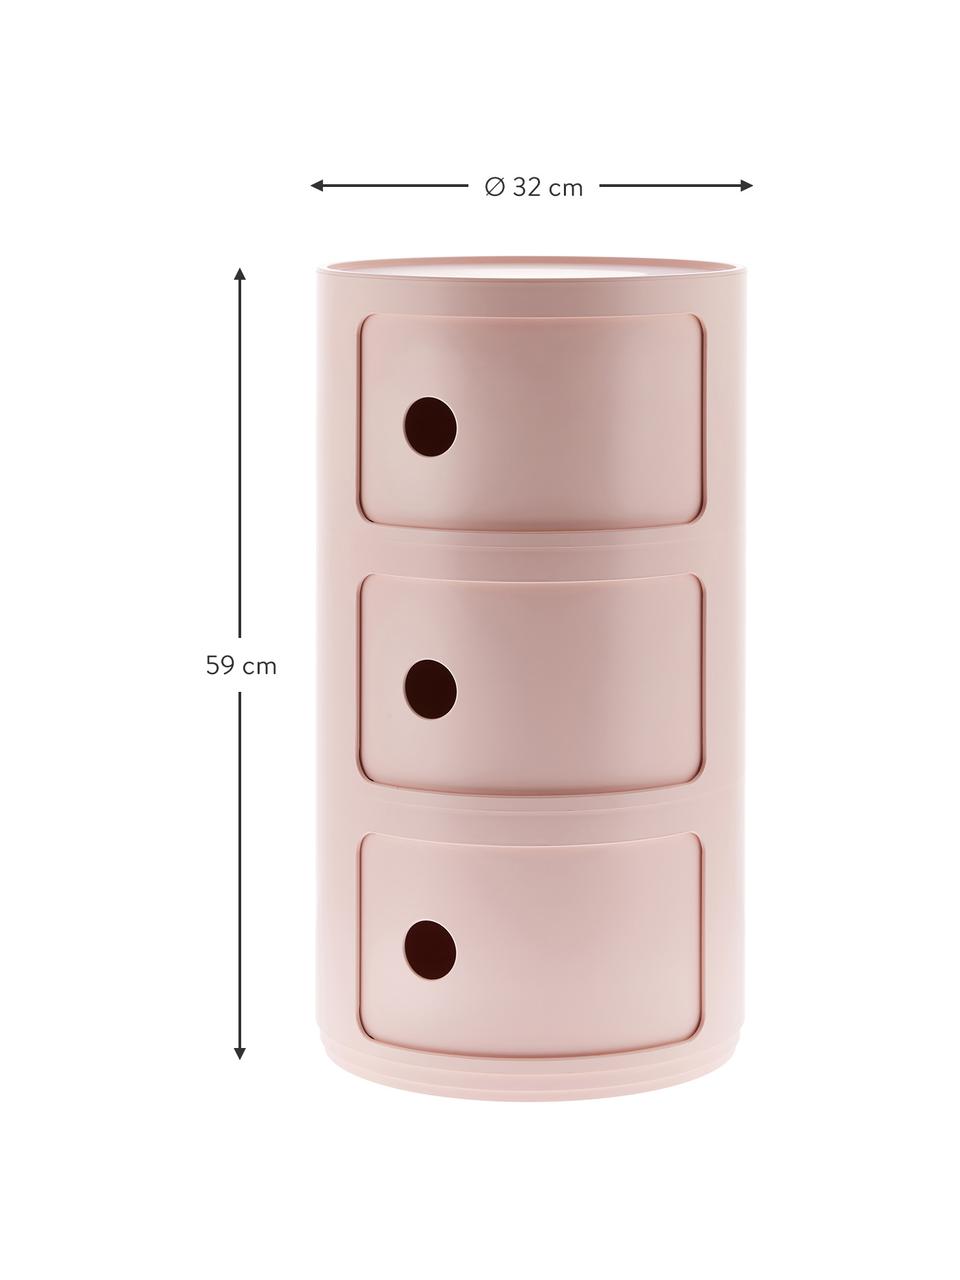 COMPONIBILI Bio rosa, 3 cassetti, 100% biopolimero da materie prime rinnovabili, Rosa opaco, Ø 32 x Alt. 59 cm